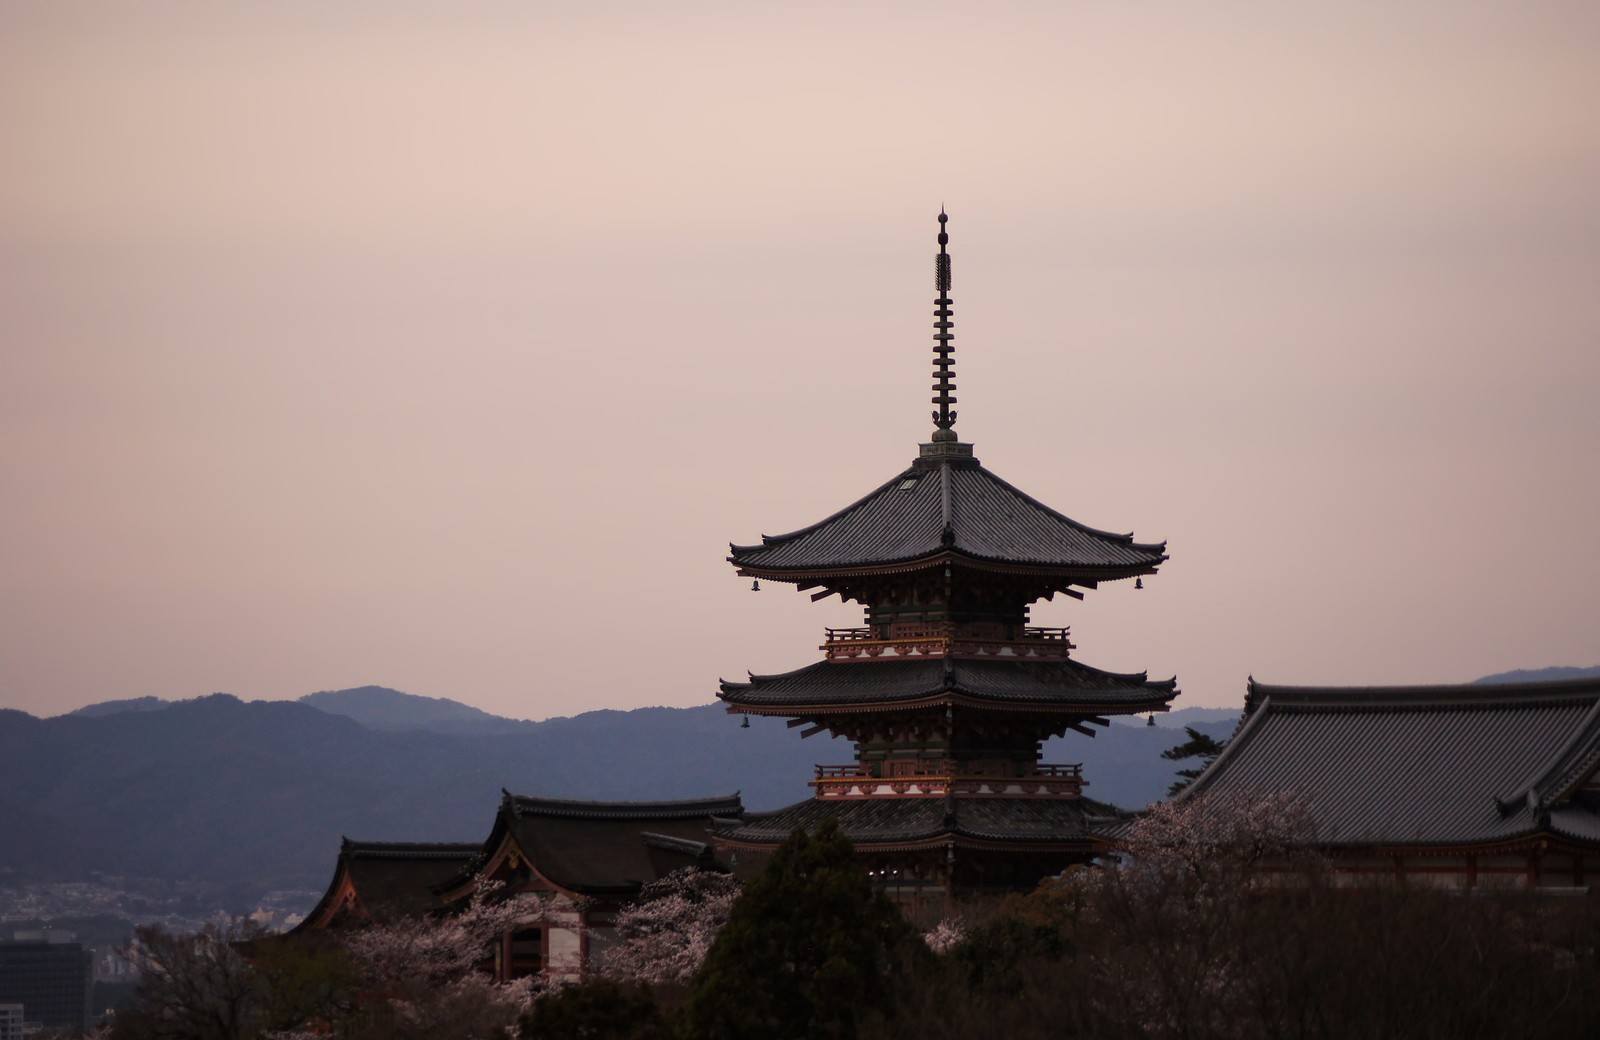 宮川町は京都の粋な花街 舞妓さんが迎えるビアガーデンやランチも充実 Travelnote トラベルノート